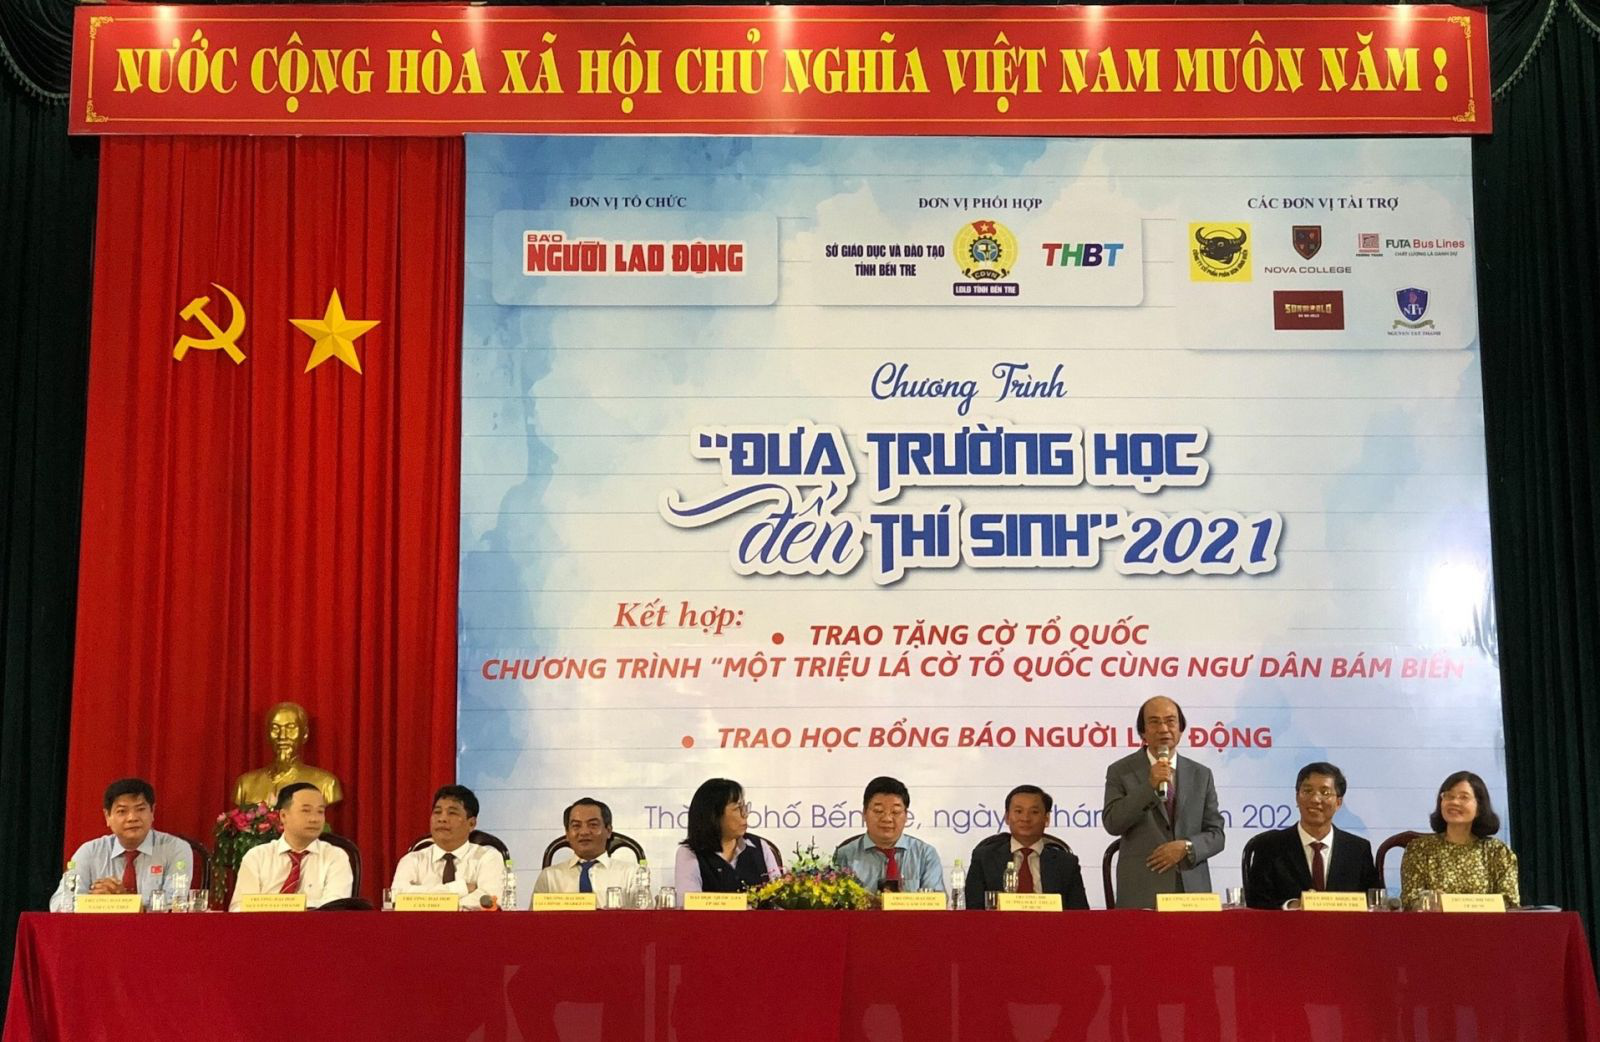 TS. Trần Mạnh Thành - Phó Hiệu trưởng thường trực Trường cao đẳng Nova chia sẻ về chương trình đào tạo tại Nova College.